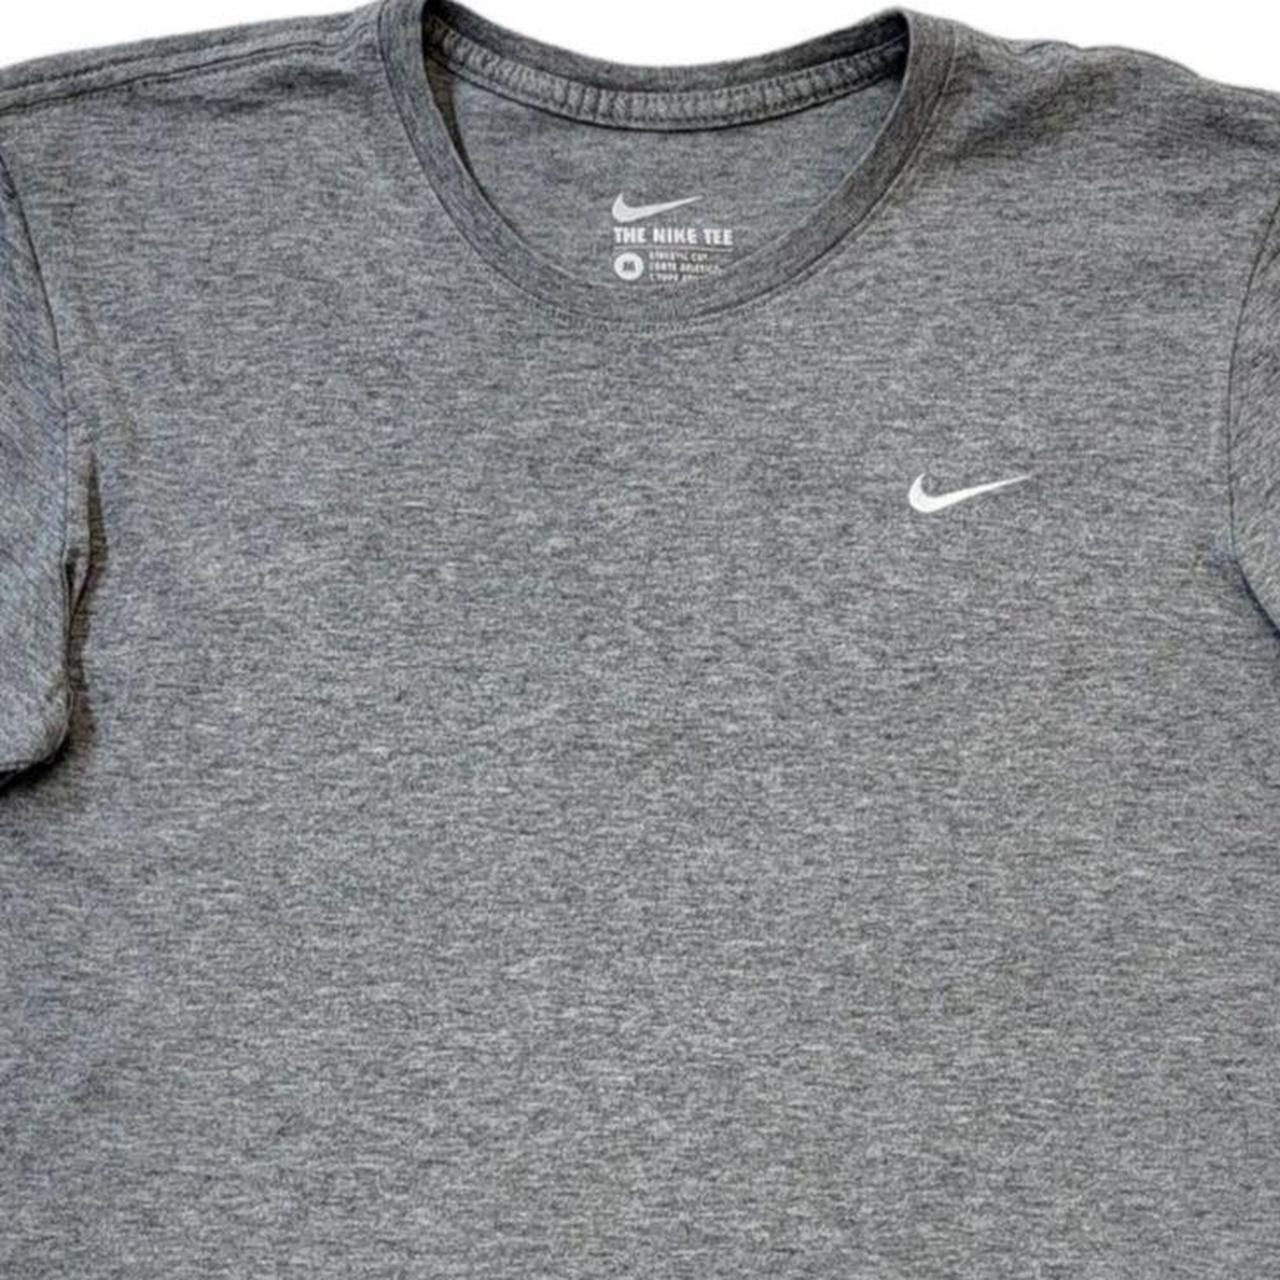 nike T-shirt Nike T-shirt 90s vintage short sleeve... - Depop